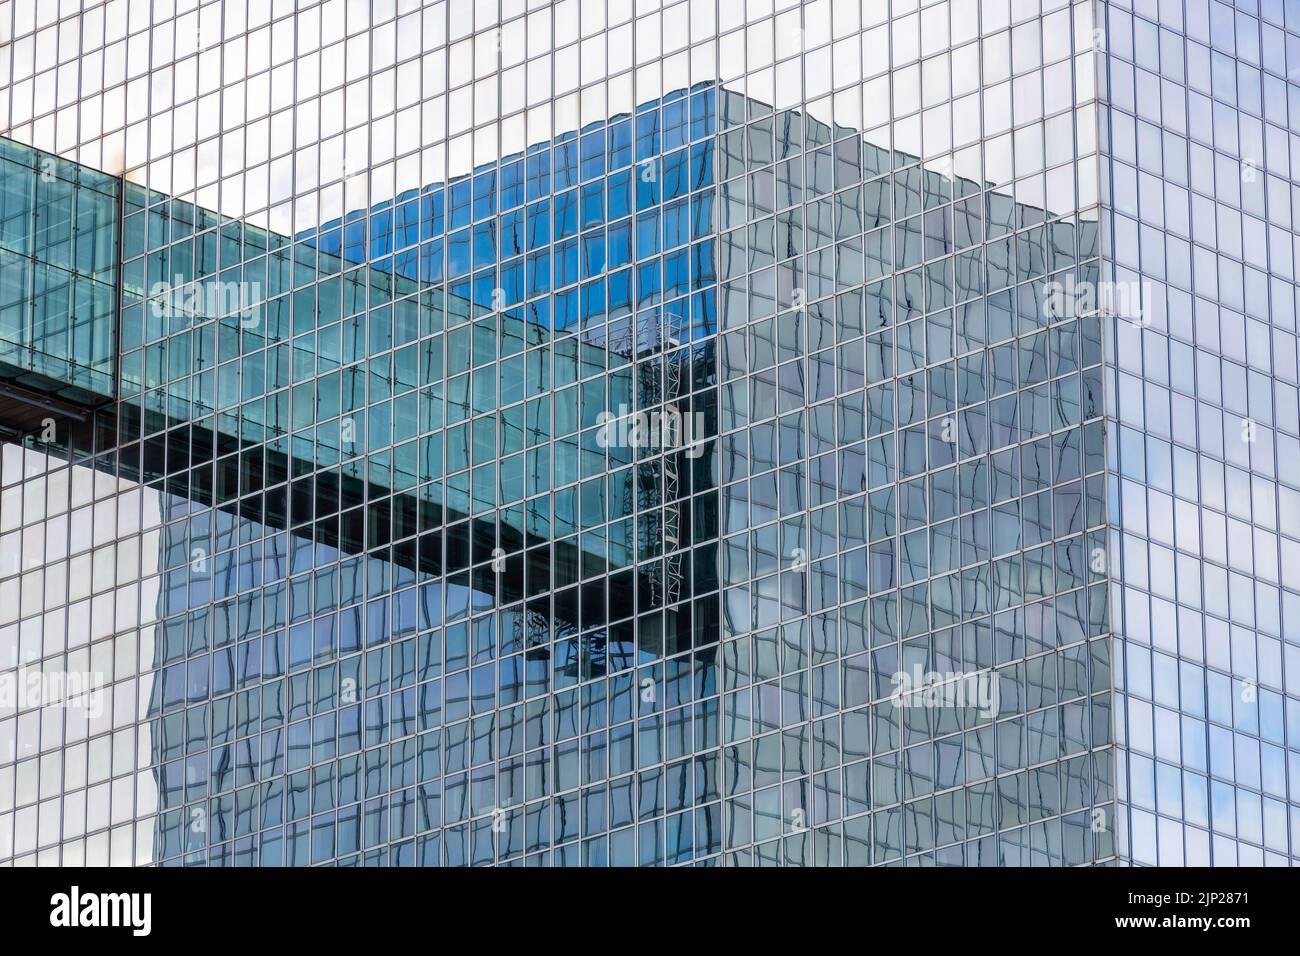 Imágenes reflejadas recíprocas de dos torres de vidrio conectadas por una pasarela. Foto de stock